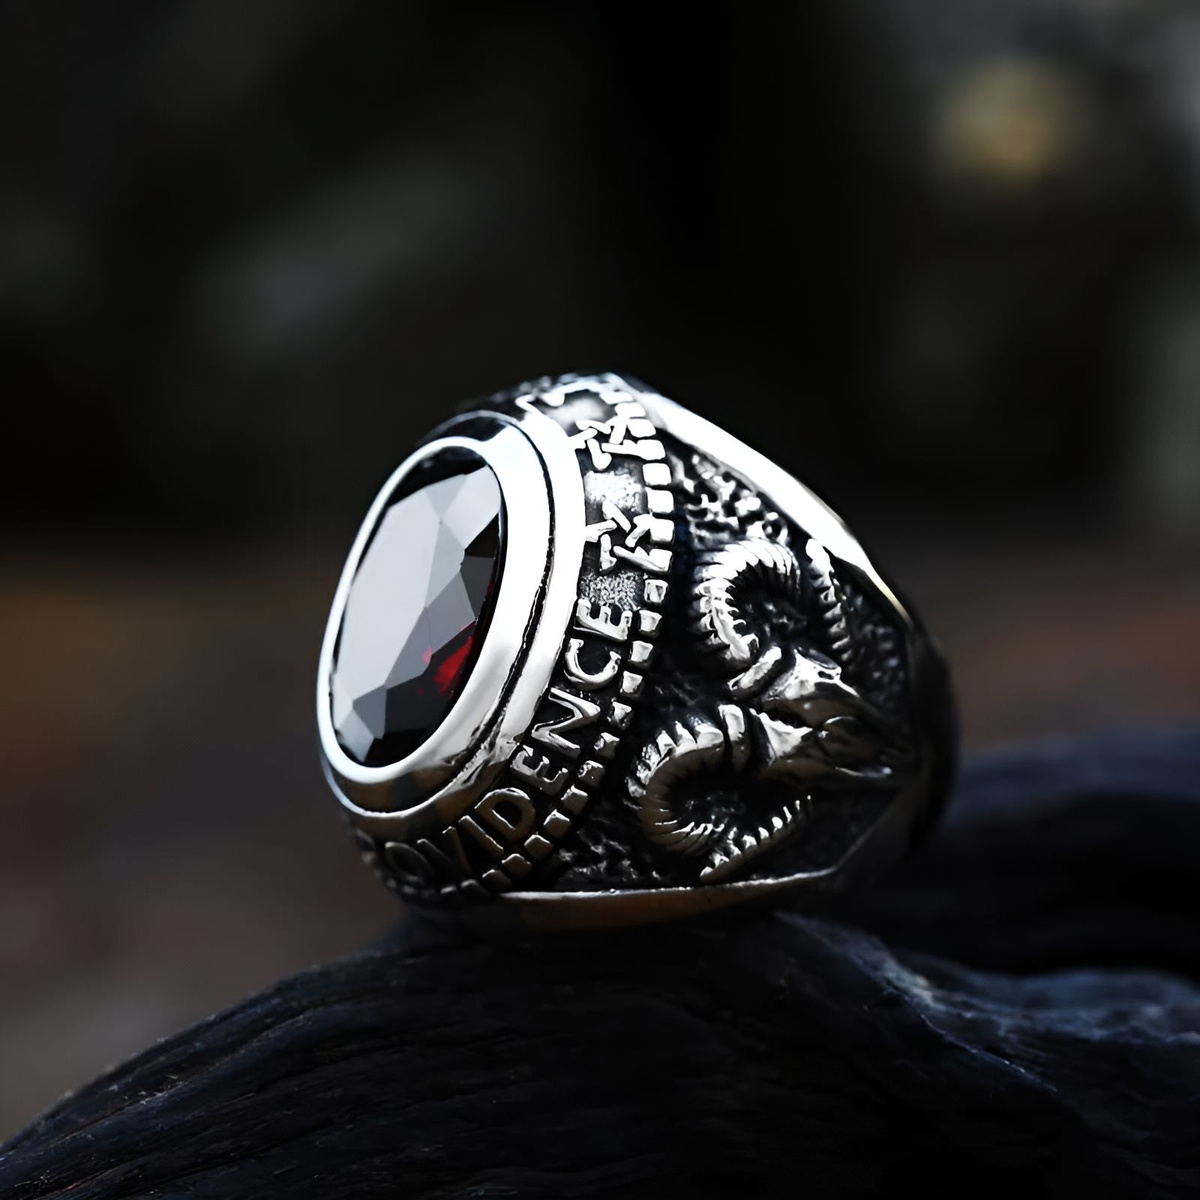 Кольцо рубин, кольцо гранат, кольцо с красным камнем, всевидящее око кольцо байкер, кольцо рубиновое, кольцо красный глаз дракона оберег, кольцо с рубином, перстень с рубином, перстень с красным камнем, фианит красный перстень с гранатом печатка с рубином